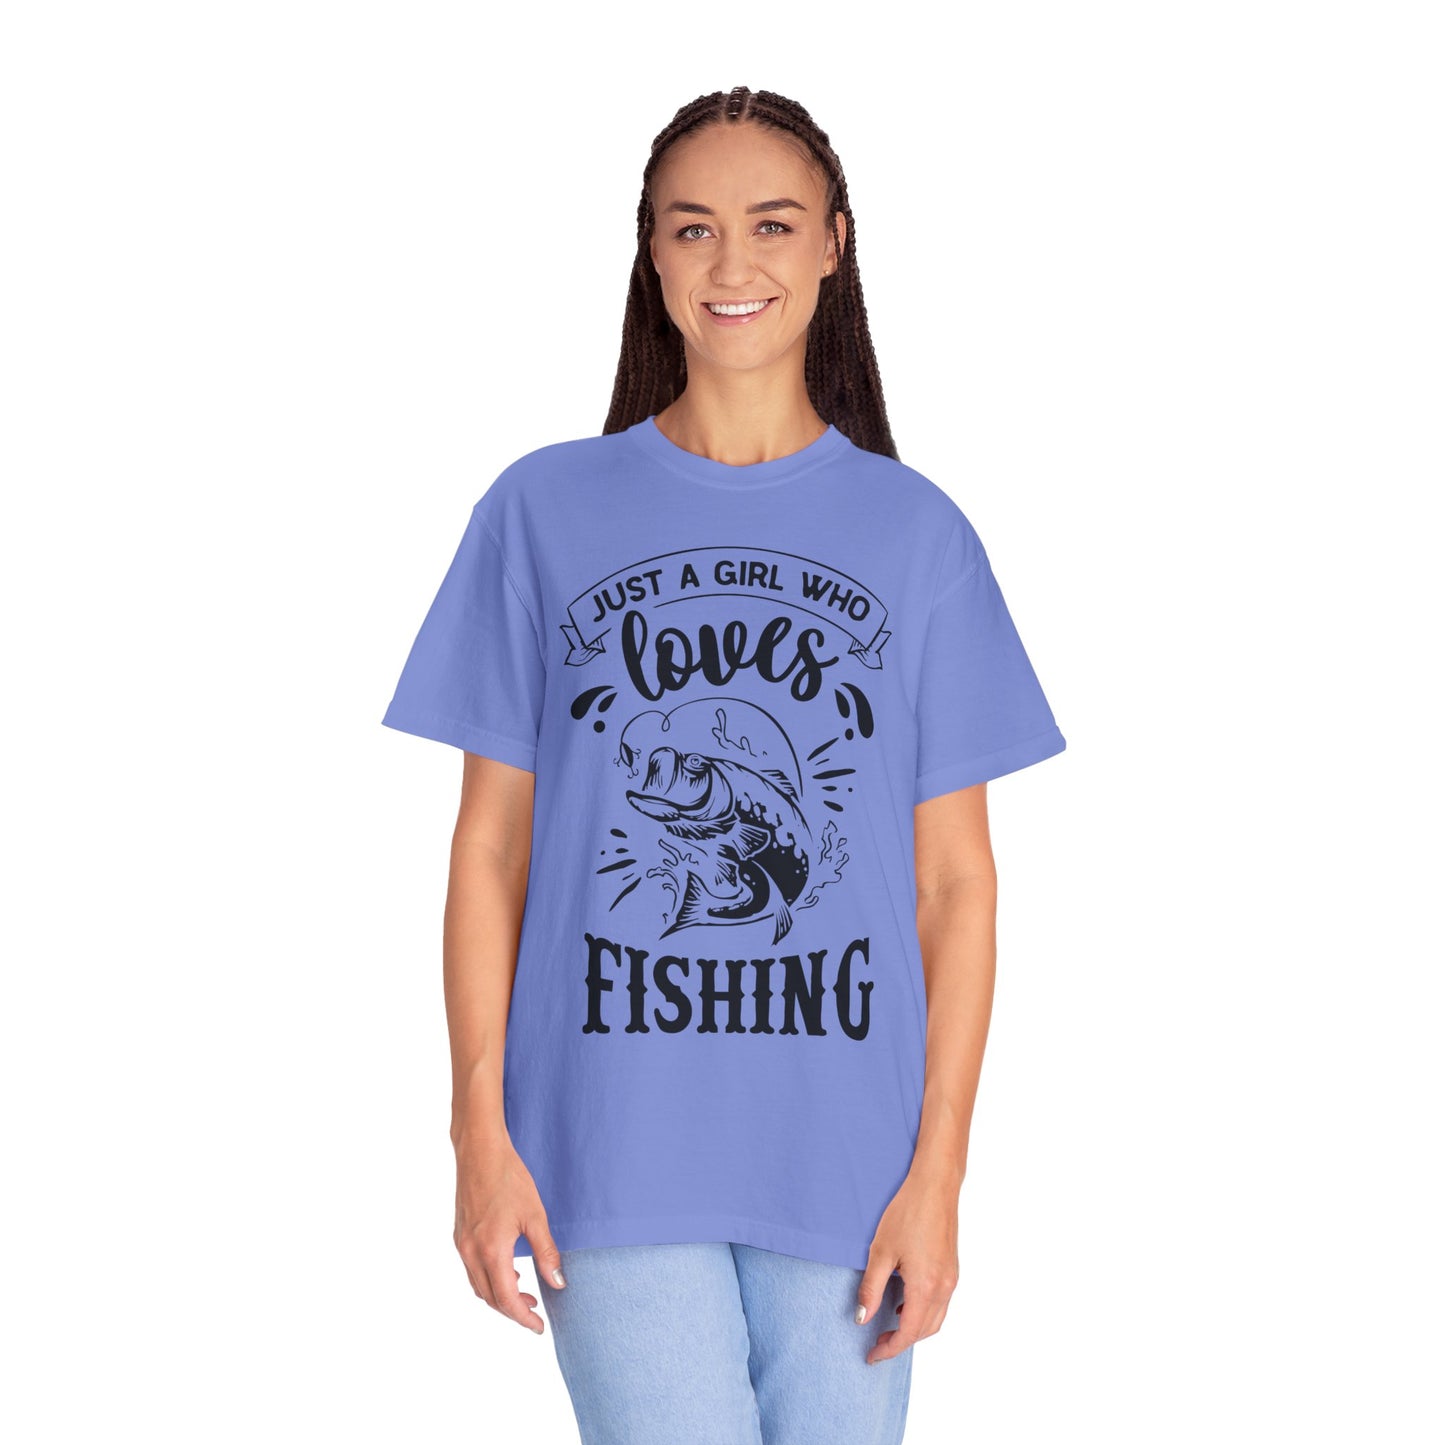 Girl who loves fishing: Unisex Garment-Dyed T-shirt